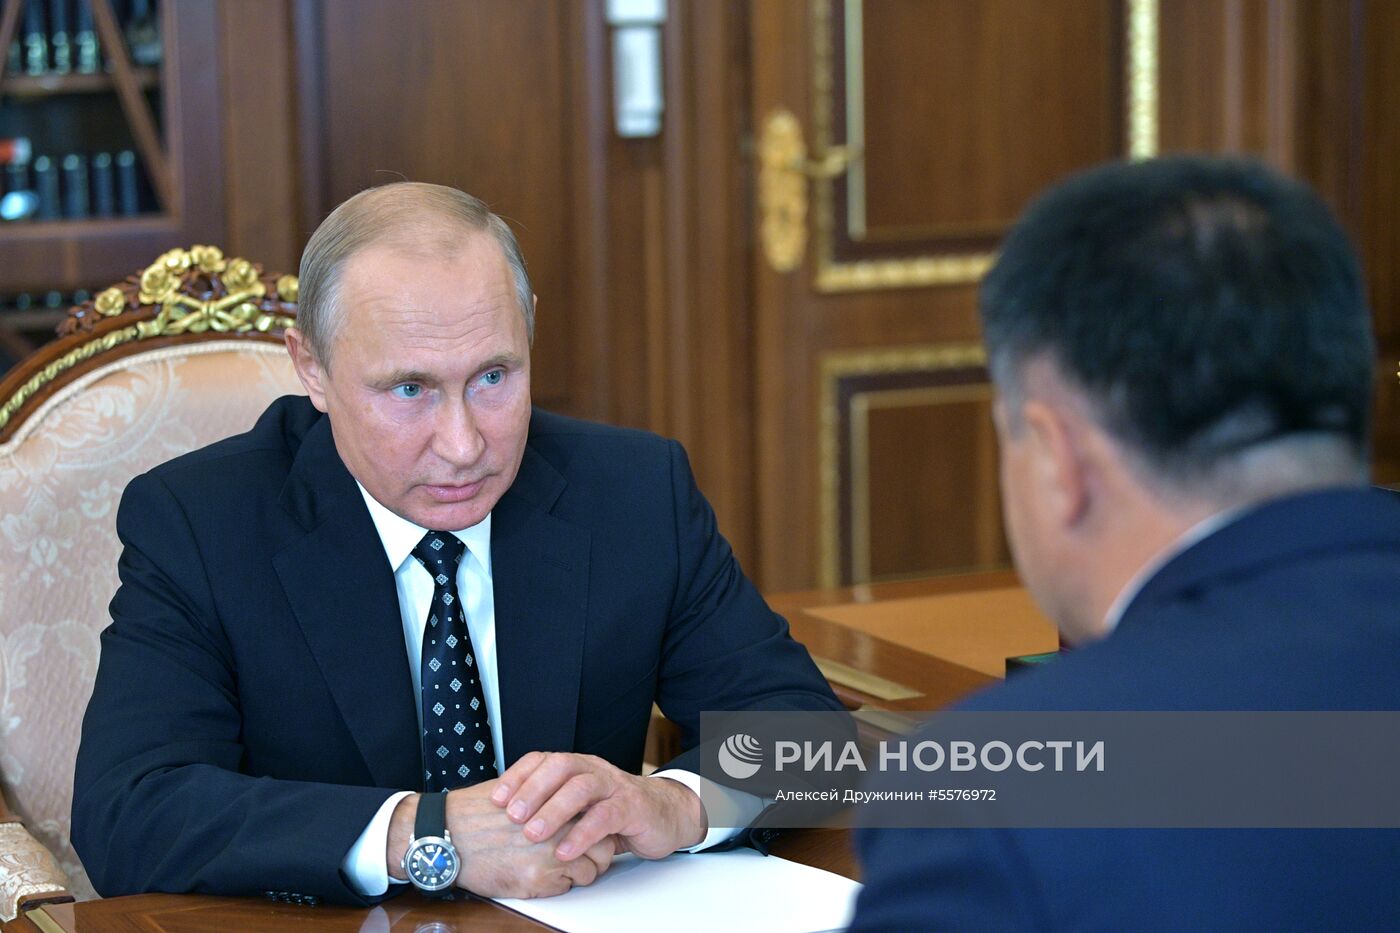 Президент РФ В. Путин встретился с врио губернатора Приморского края А. Тарасенко